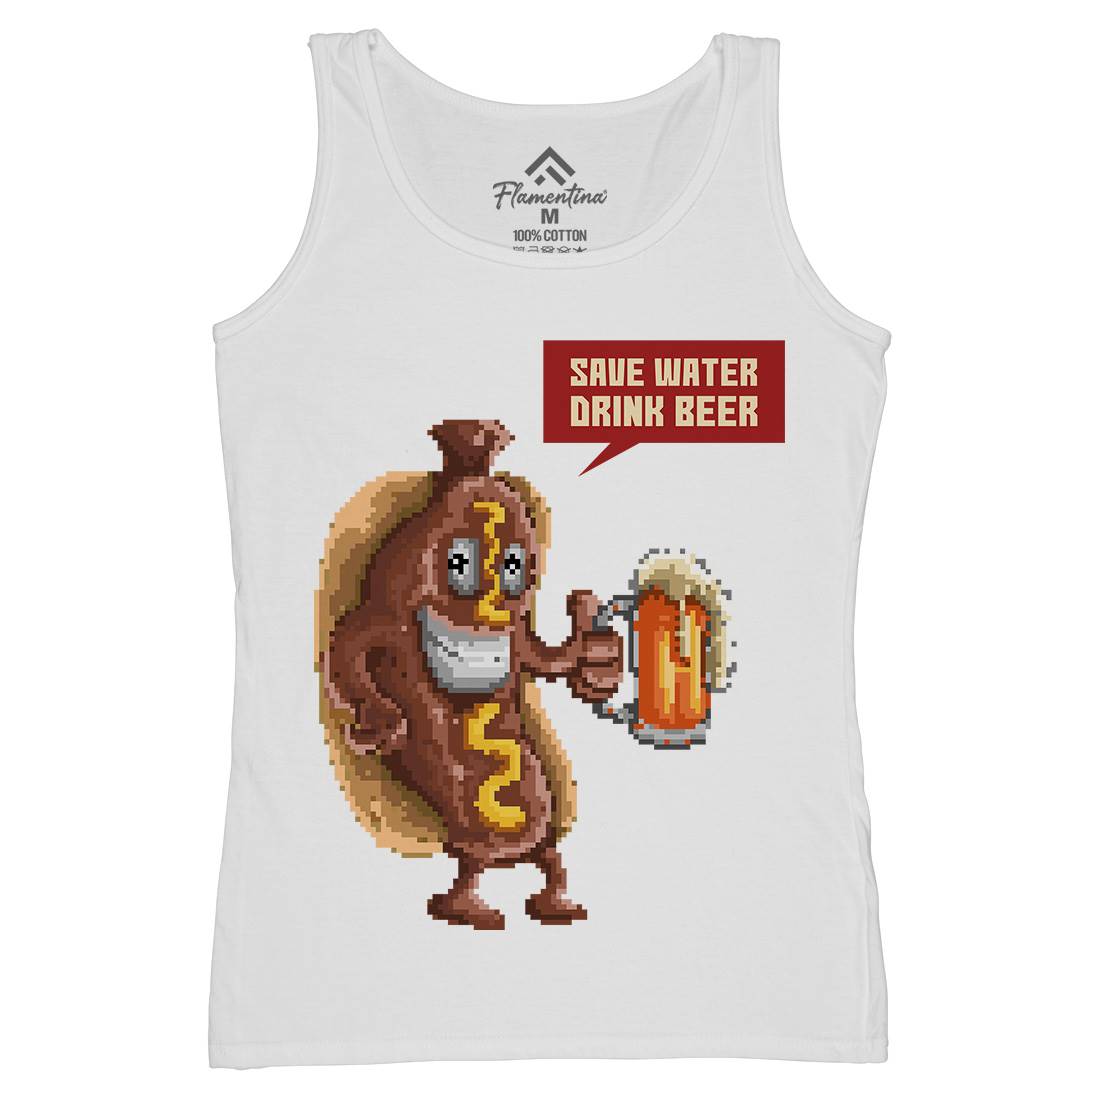 Save Water Drink Beer Womens Organic Tank Top Vest Drinks B956